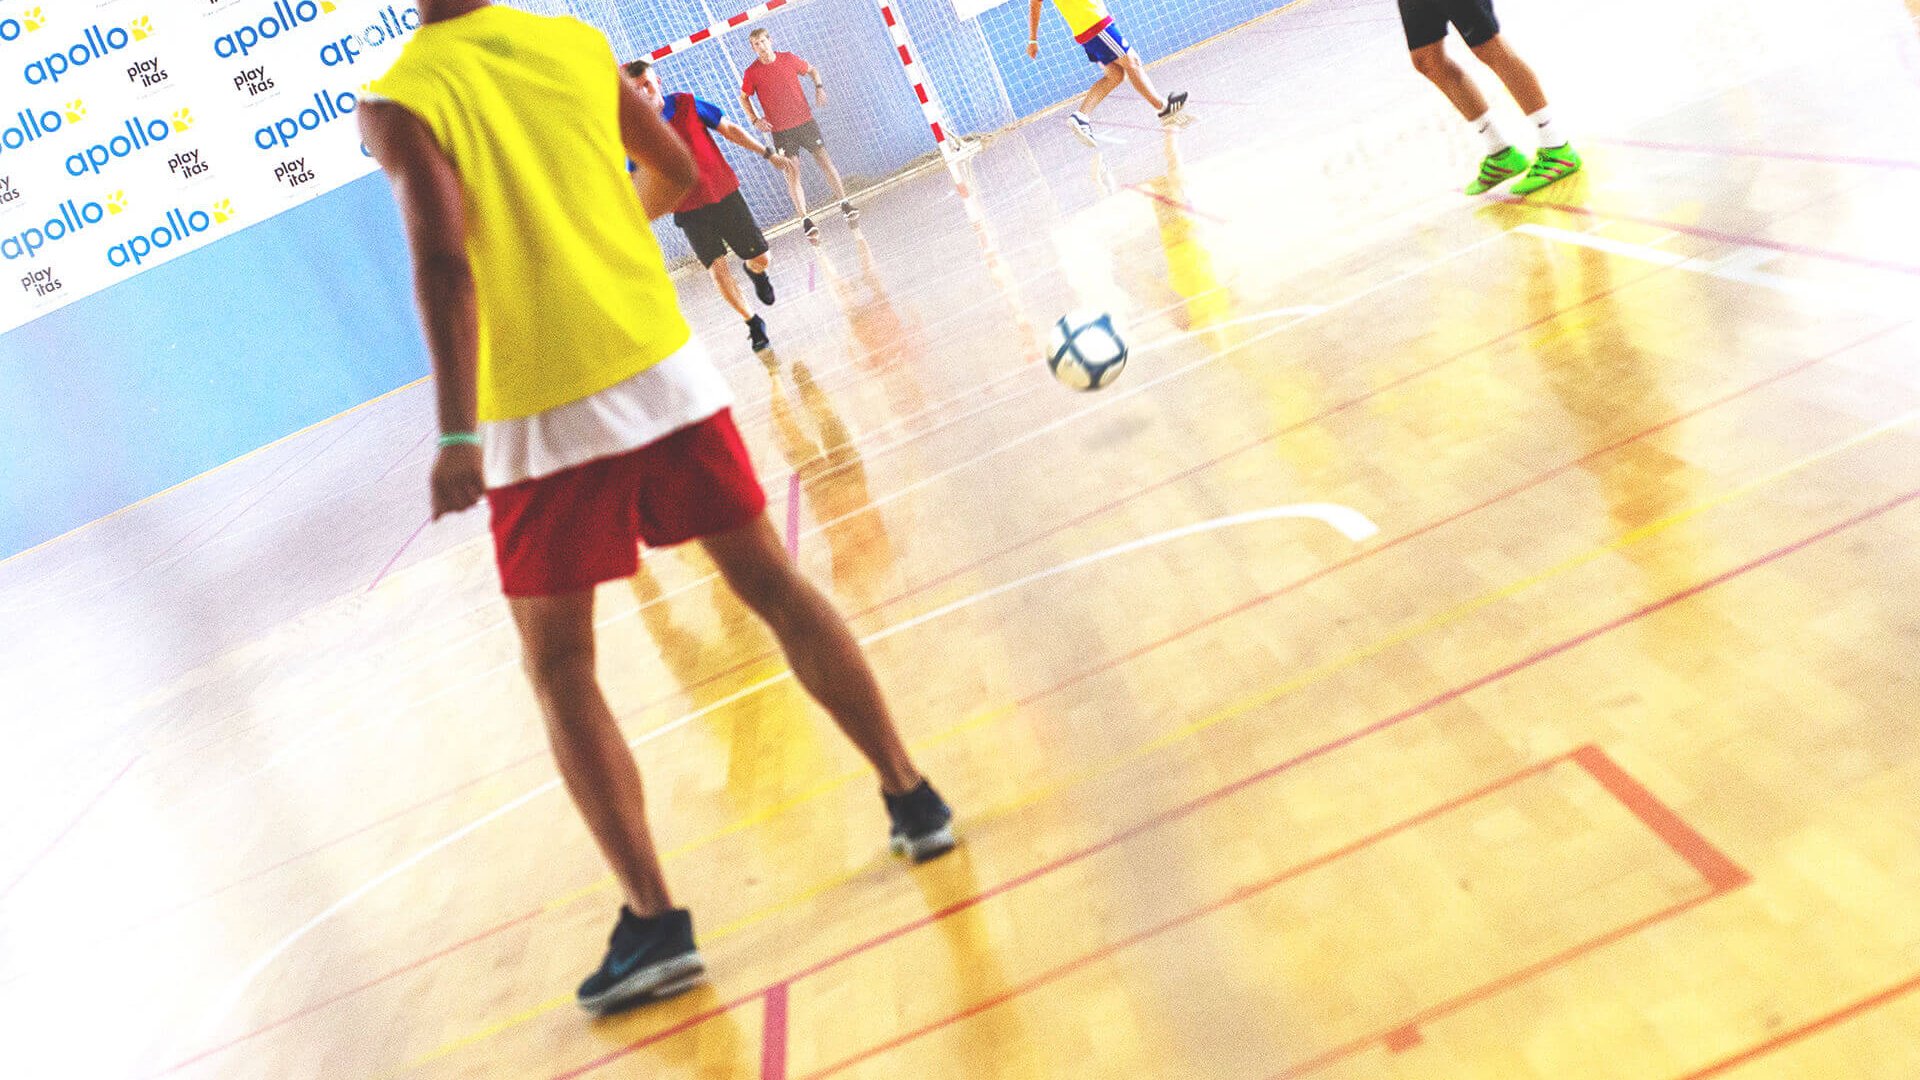 Futsal players